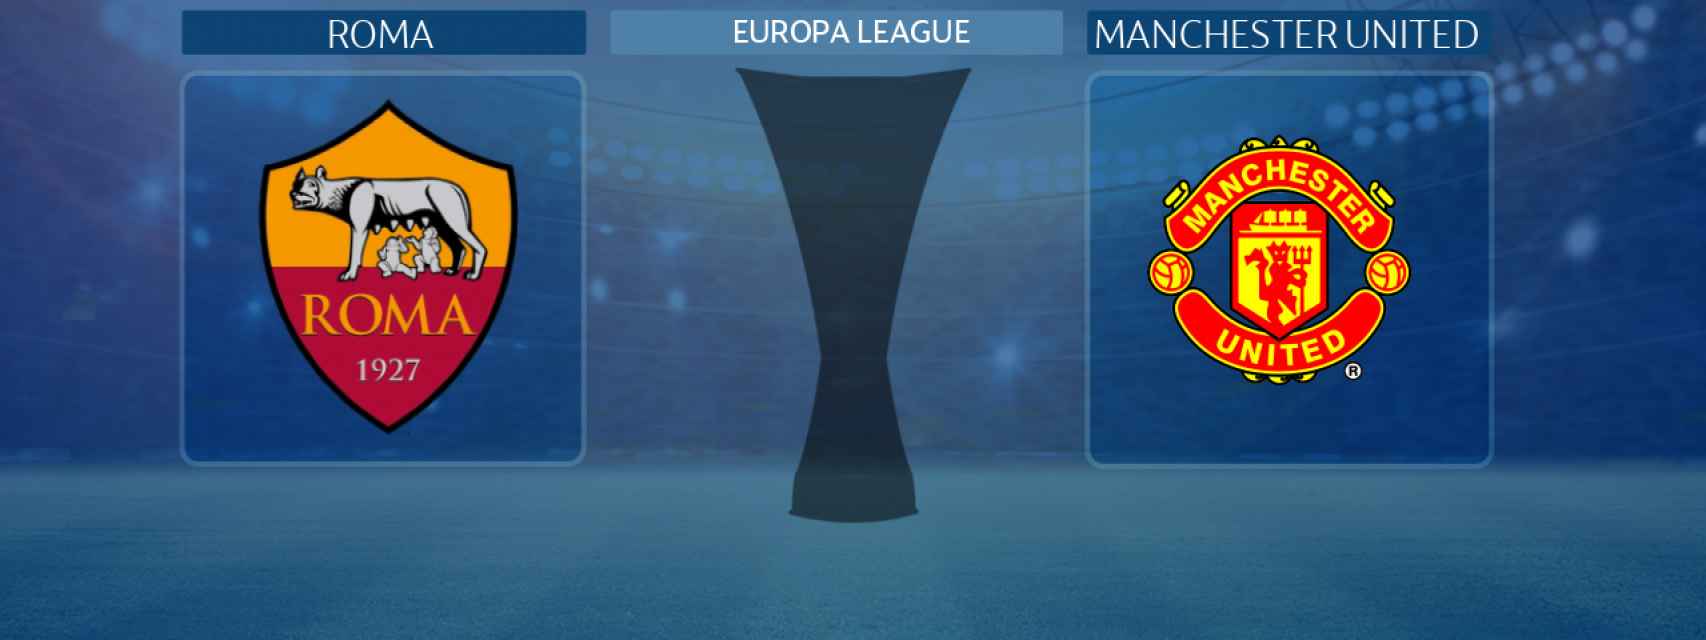 Roma - Manchester United, partido de la Europa League